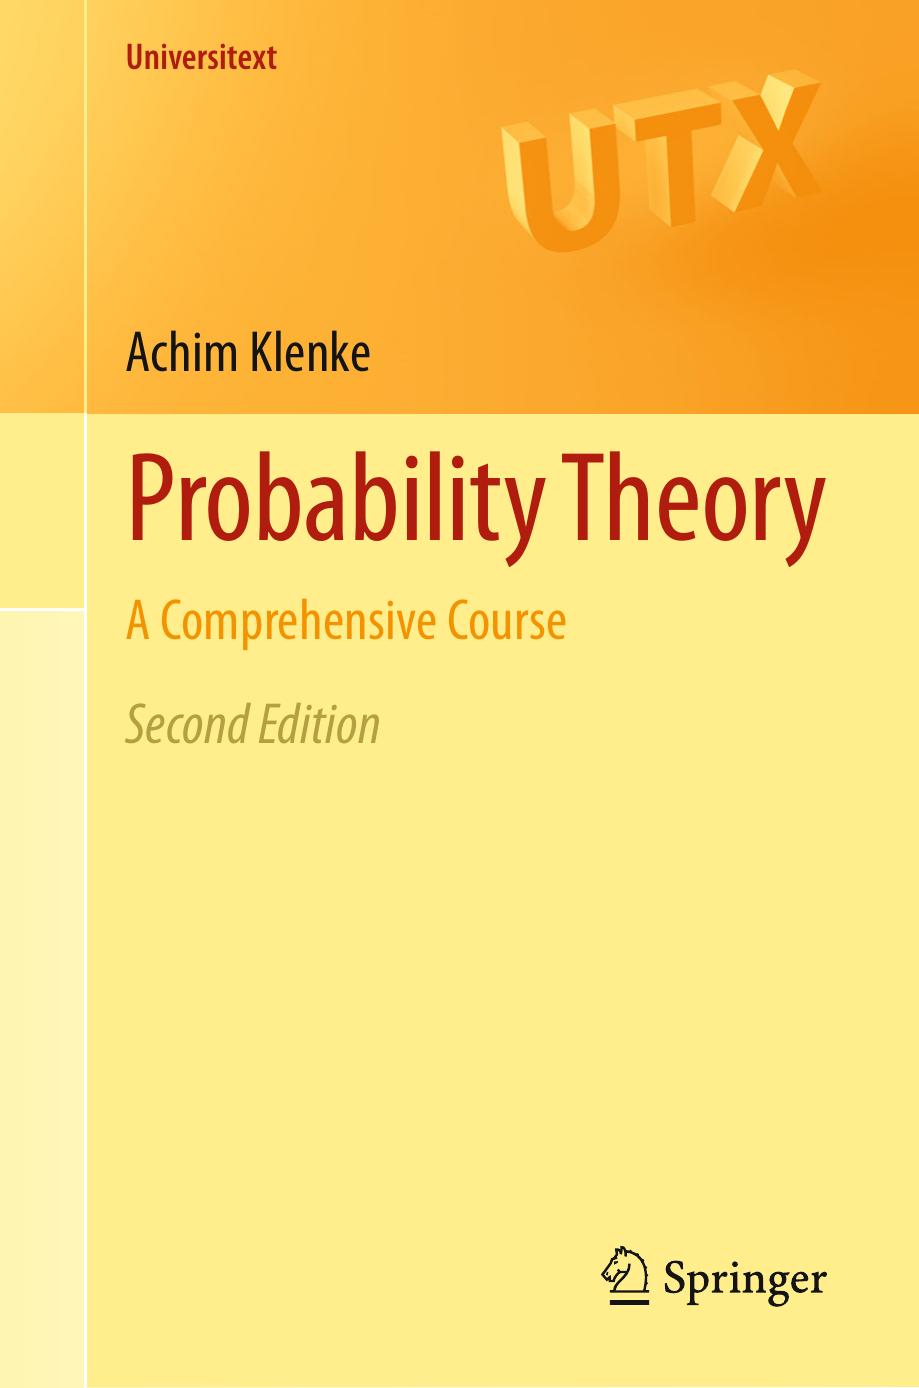 Probability Theory by Achim Klenke